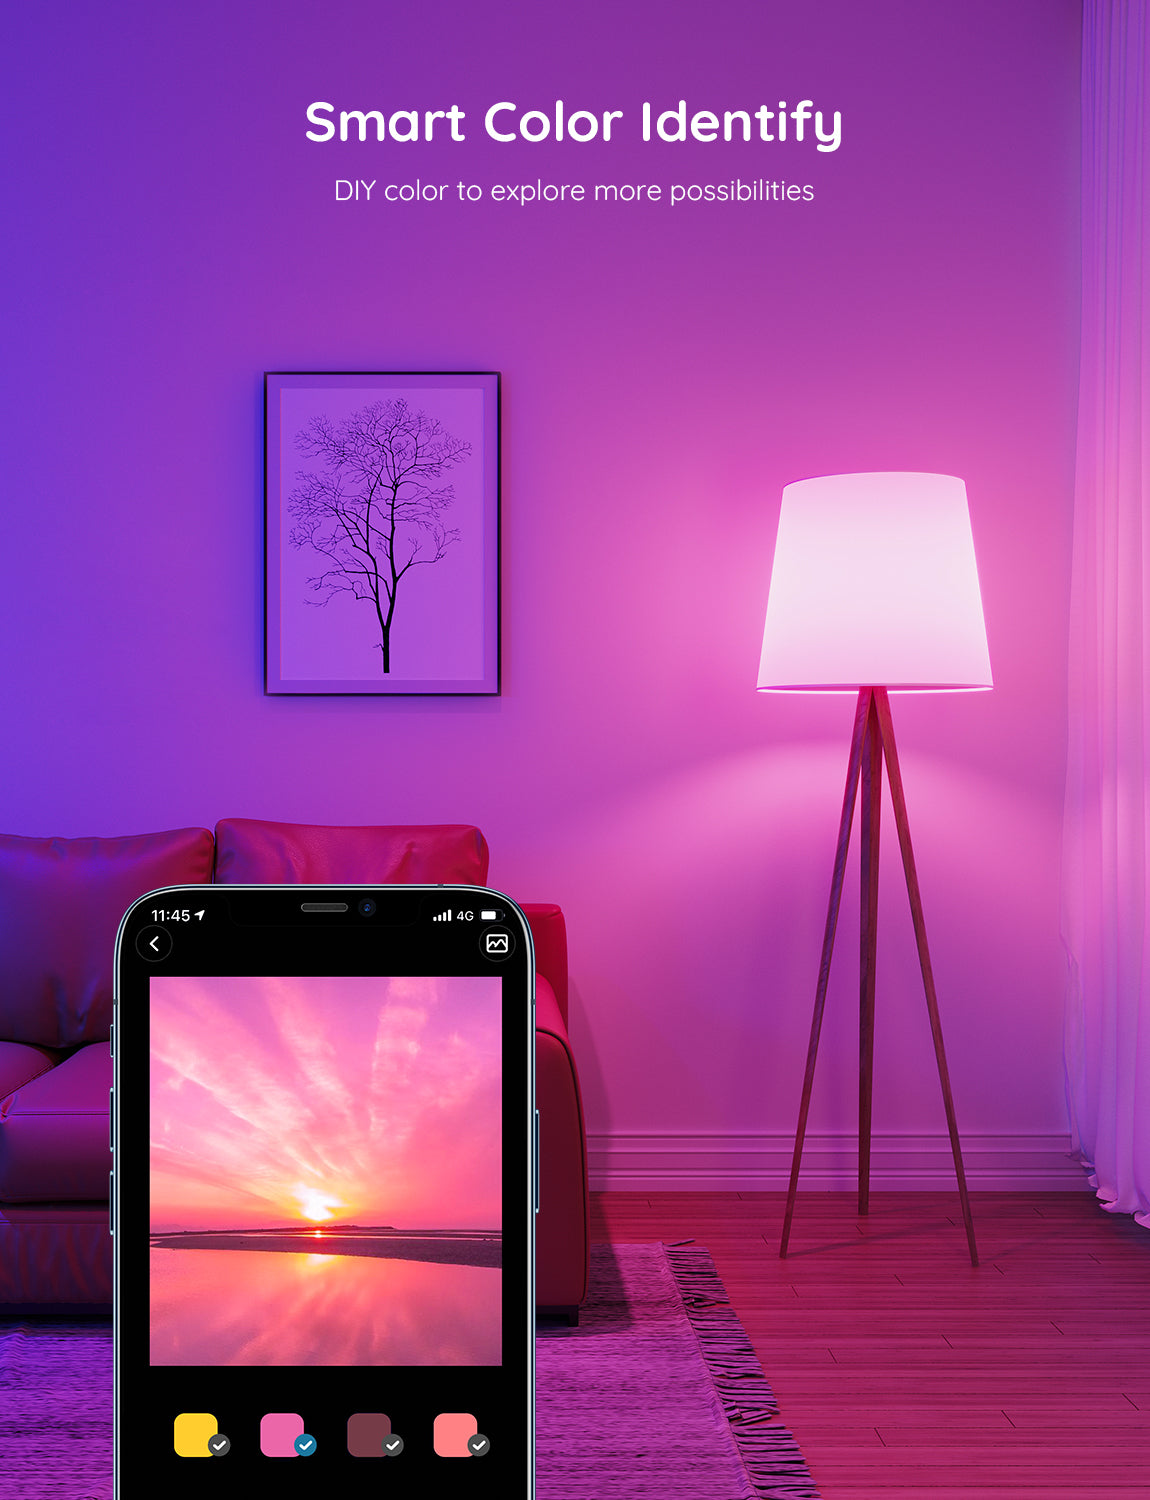 Govee Wi-Fi & Bluetooth Smart Light Bulb